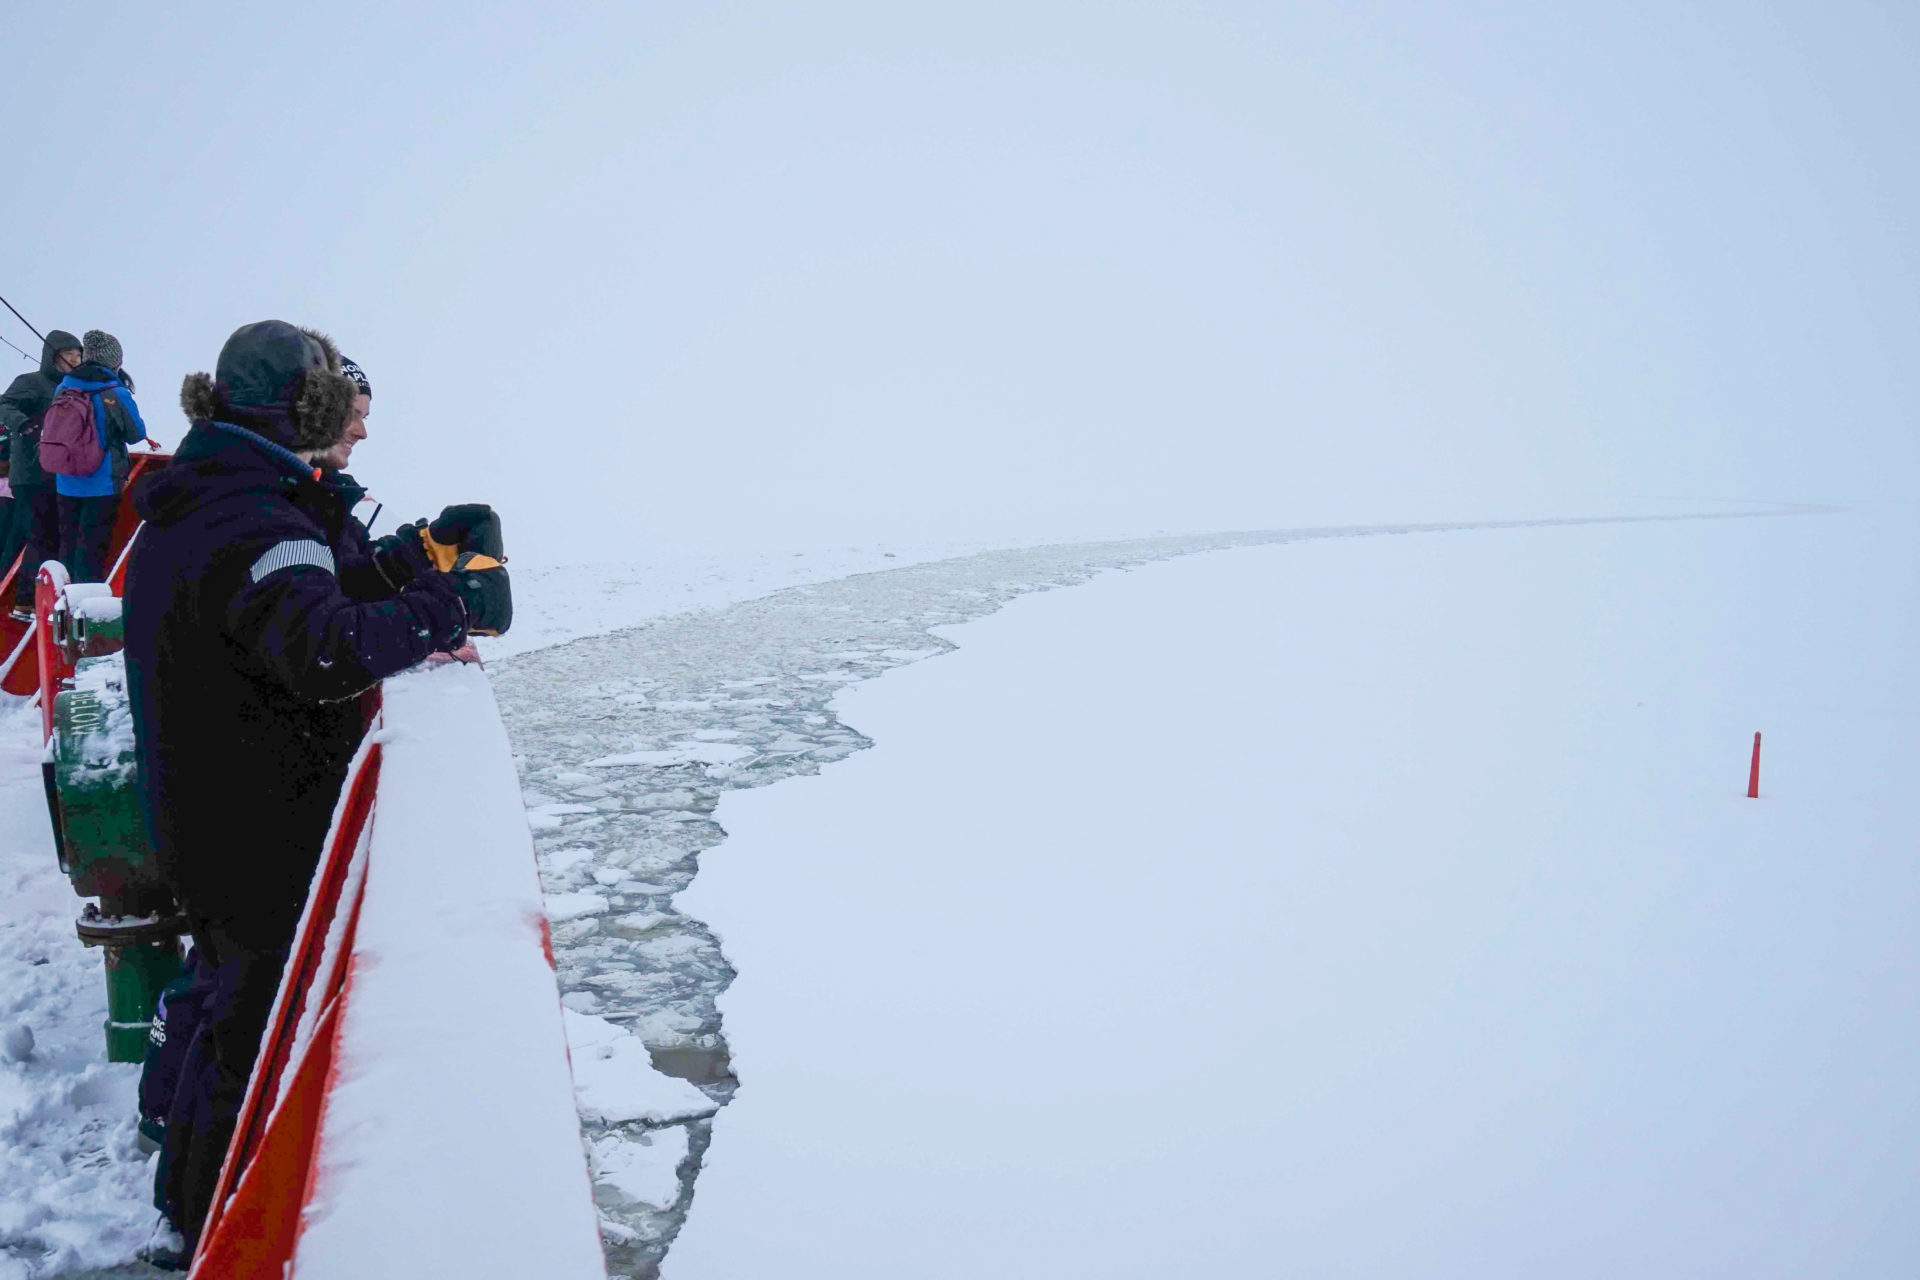 Passagiere an Deck der Polar Explorer, einem Eisbrecher auf Kreuzfahrt durch den finnischen Meerbusen in Lappland